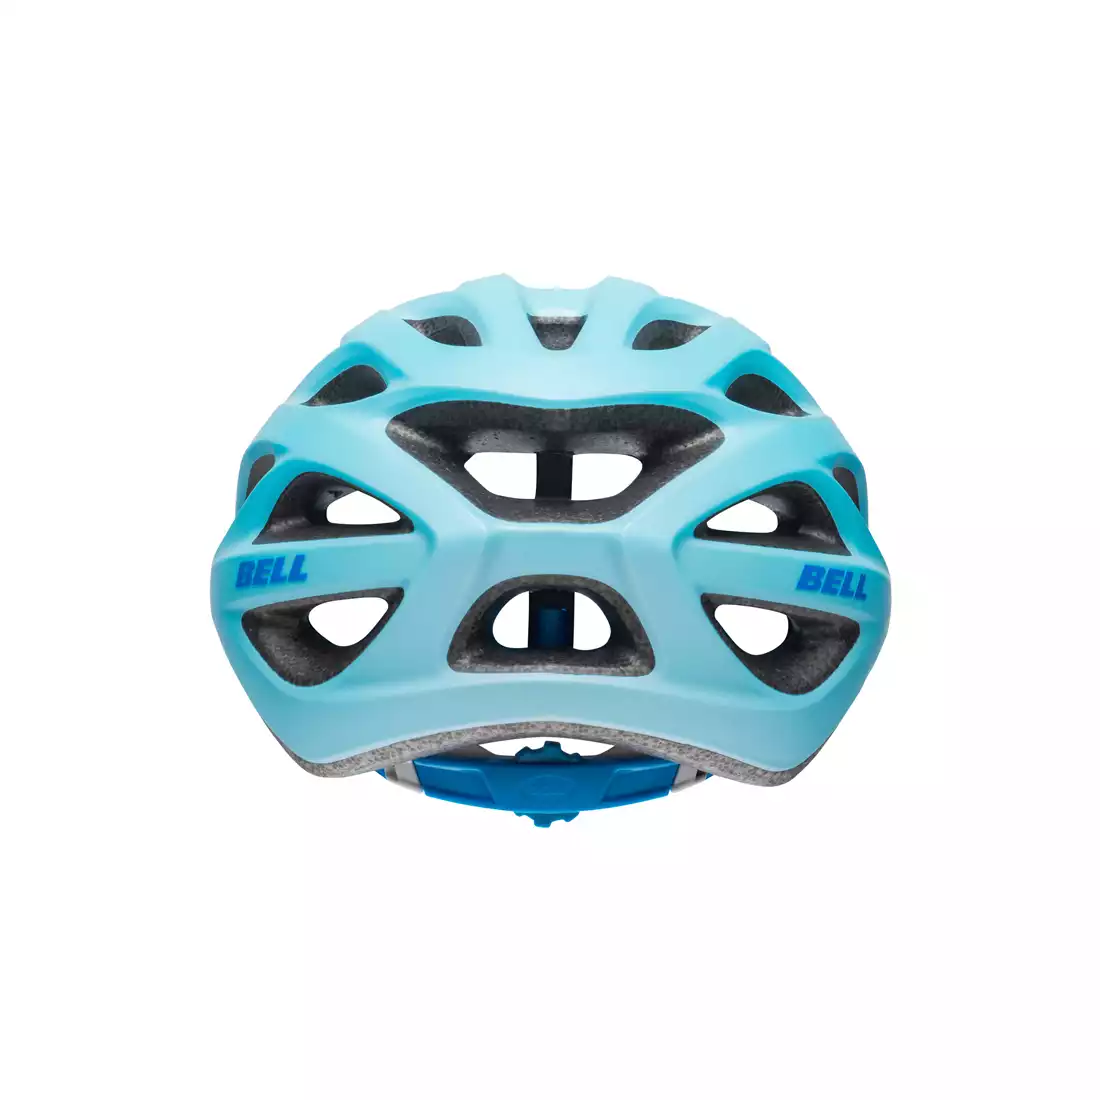 BELL TRACKER R - BEL-7095370 - kask rowerowy lodowy niebieski mat 